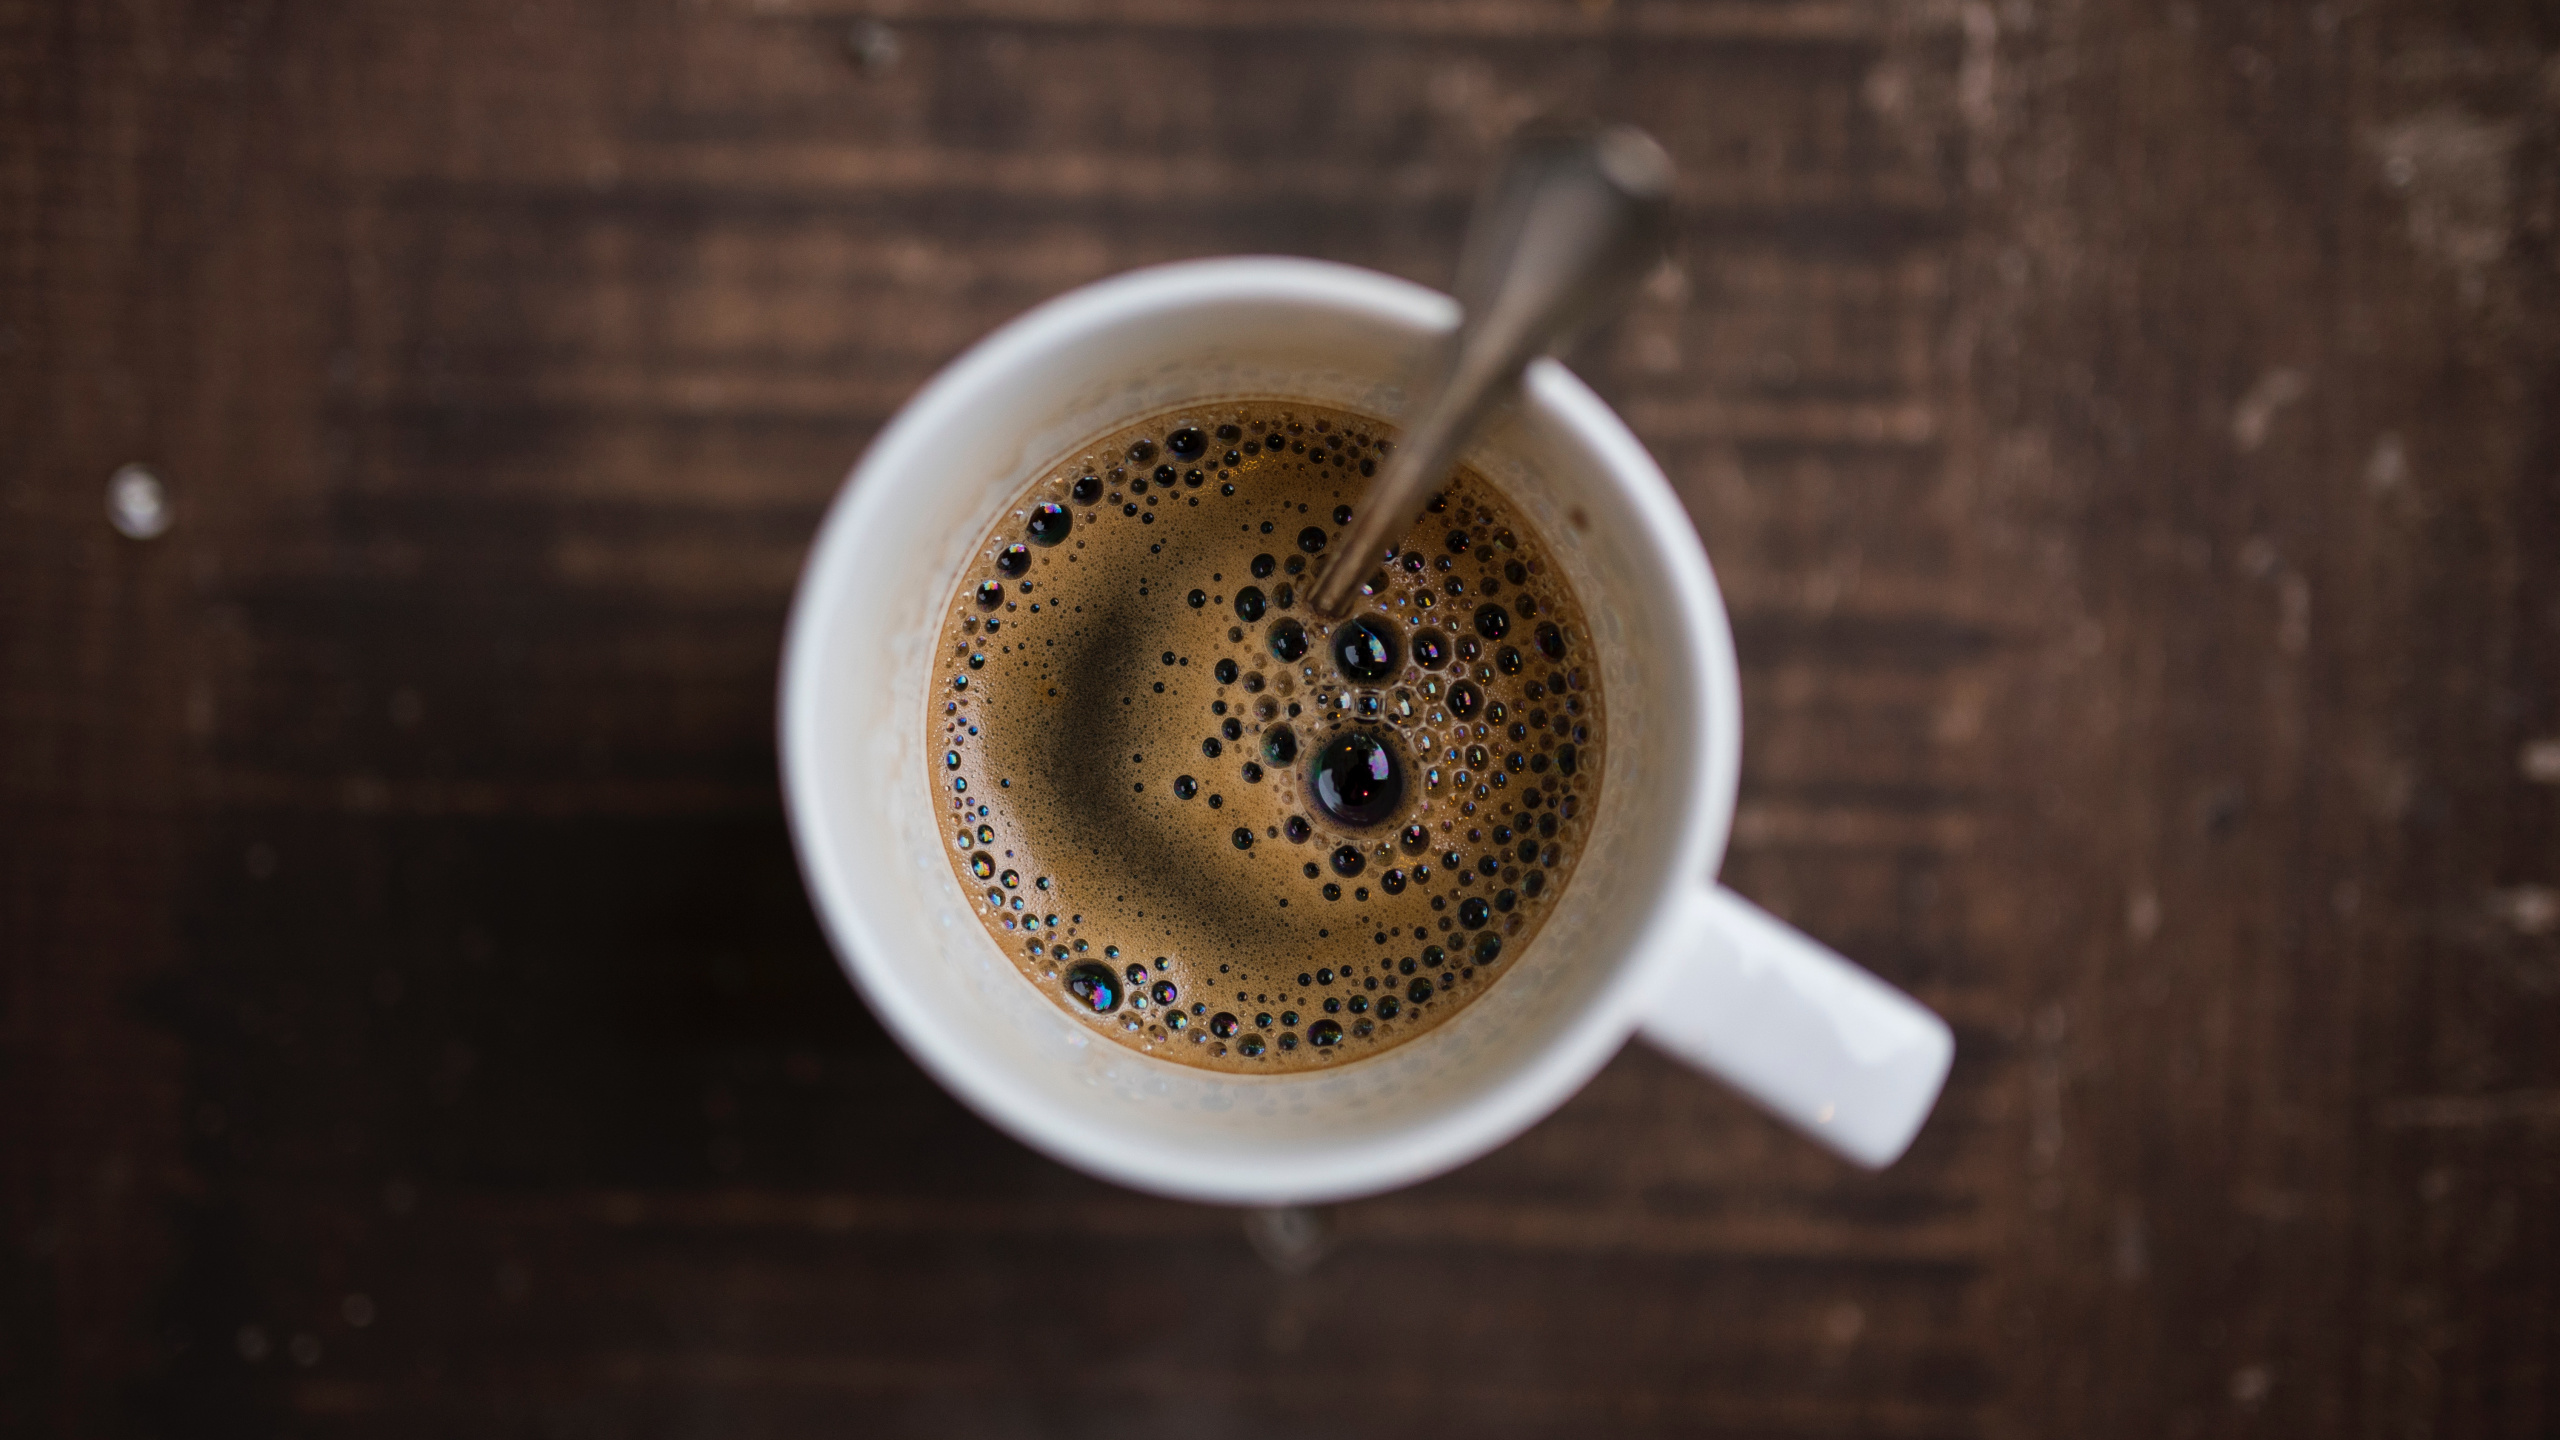 速溶咖啡, 咖啡馆, 咖啡因, 咖啡杯, 浓缩咖啡 壁纸 2560x1440 允许